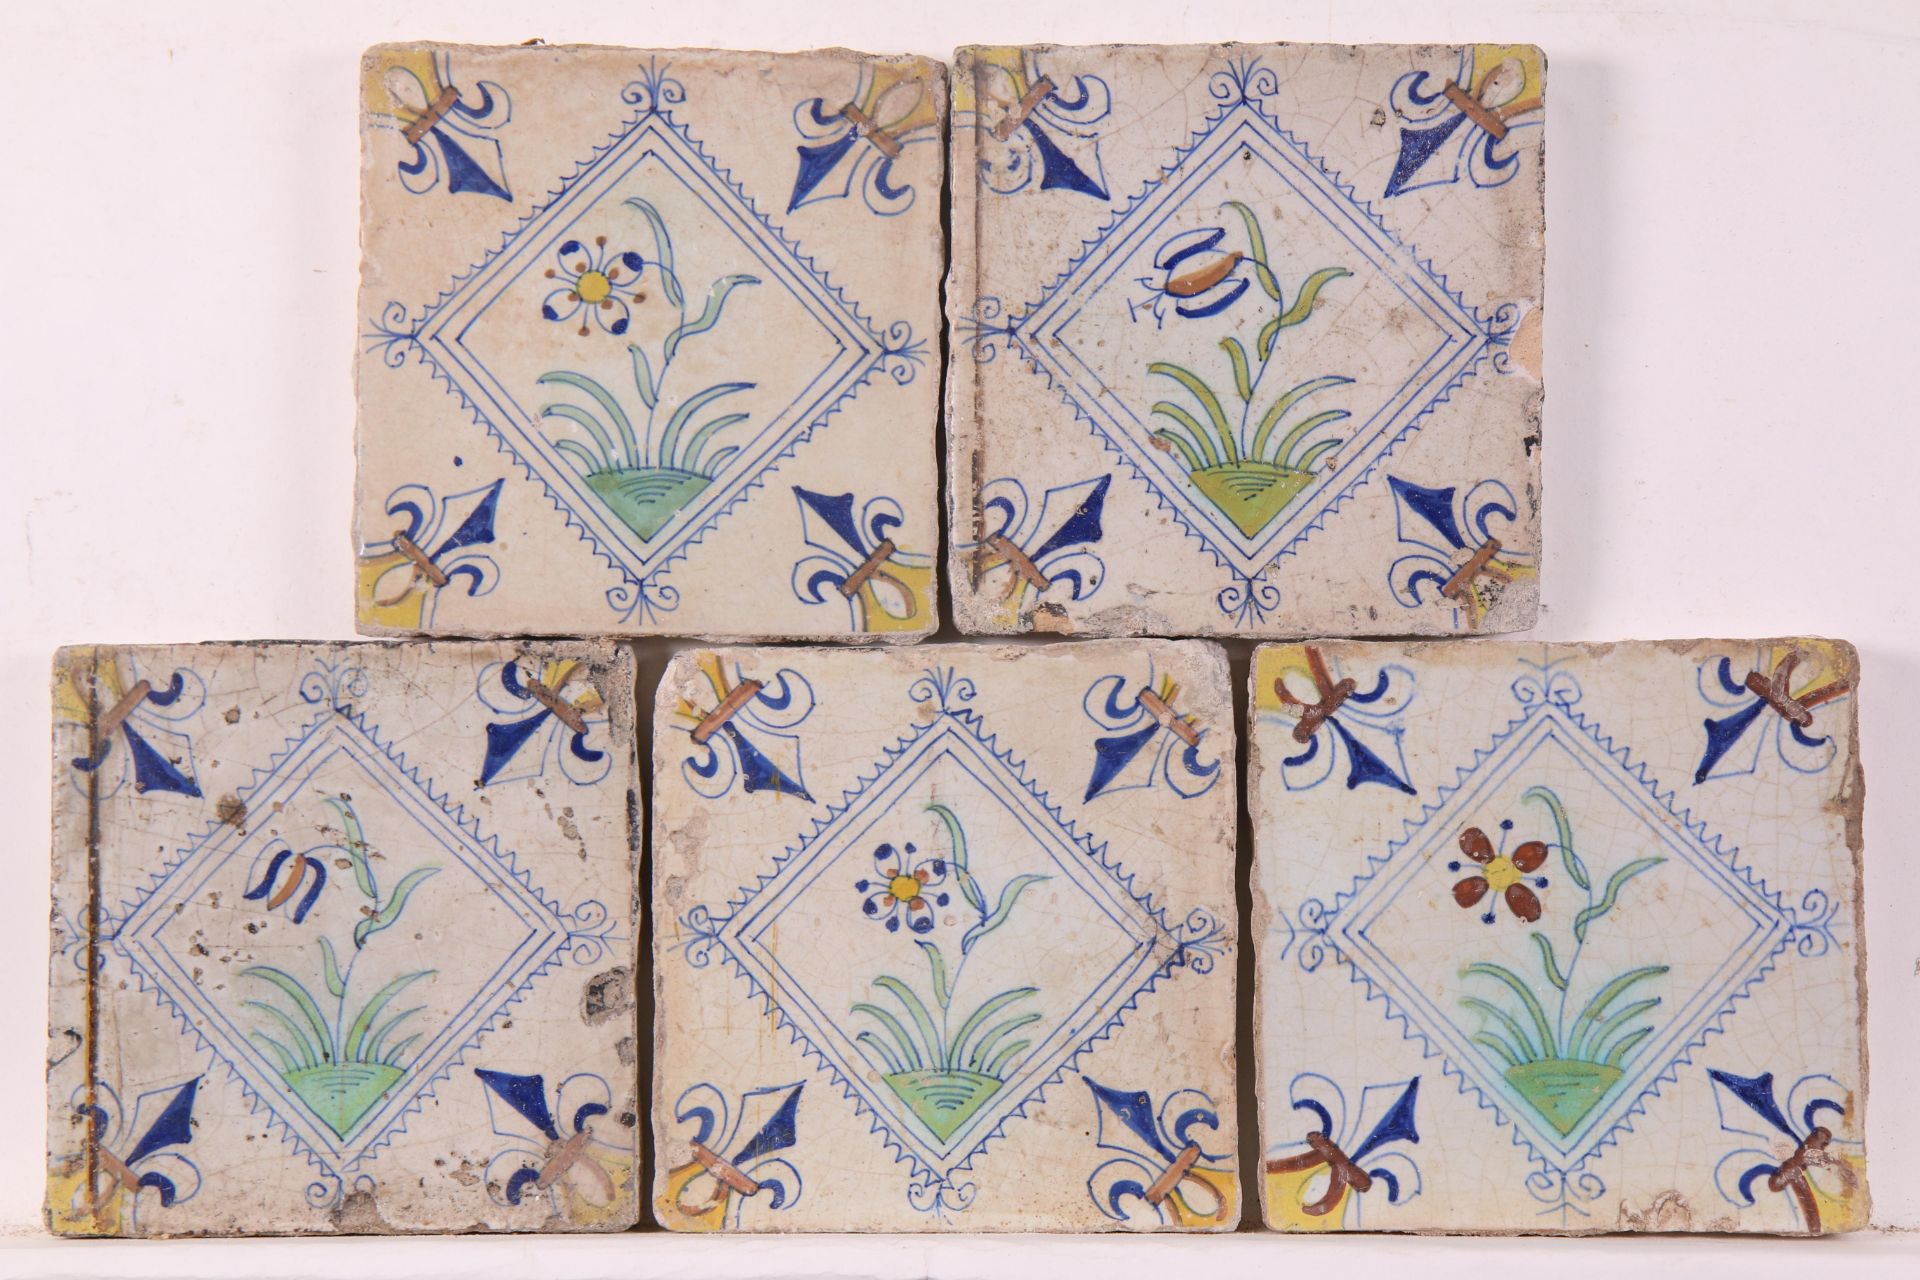 Vijf polychroom aardewerk bloemendecor tegel in gekarteld kwadraat, ca. 1620 - 1650;